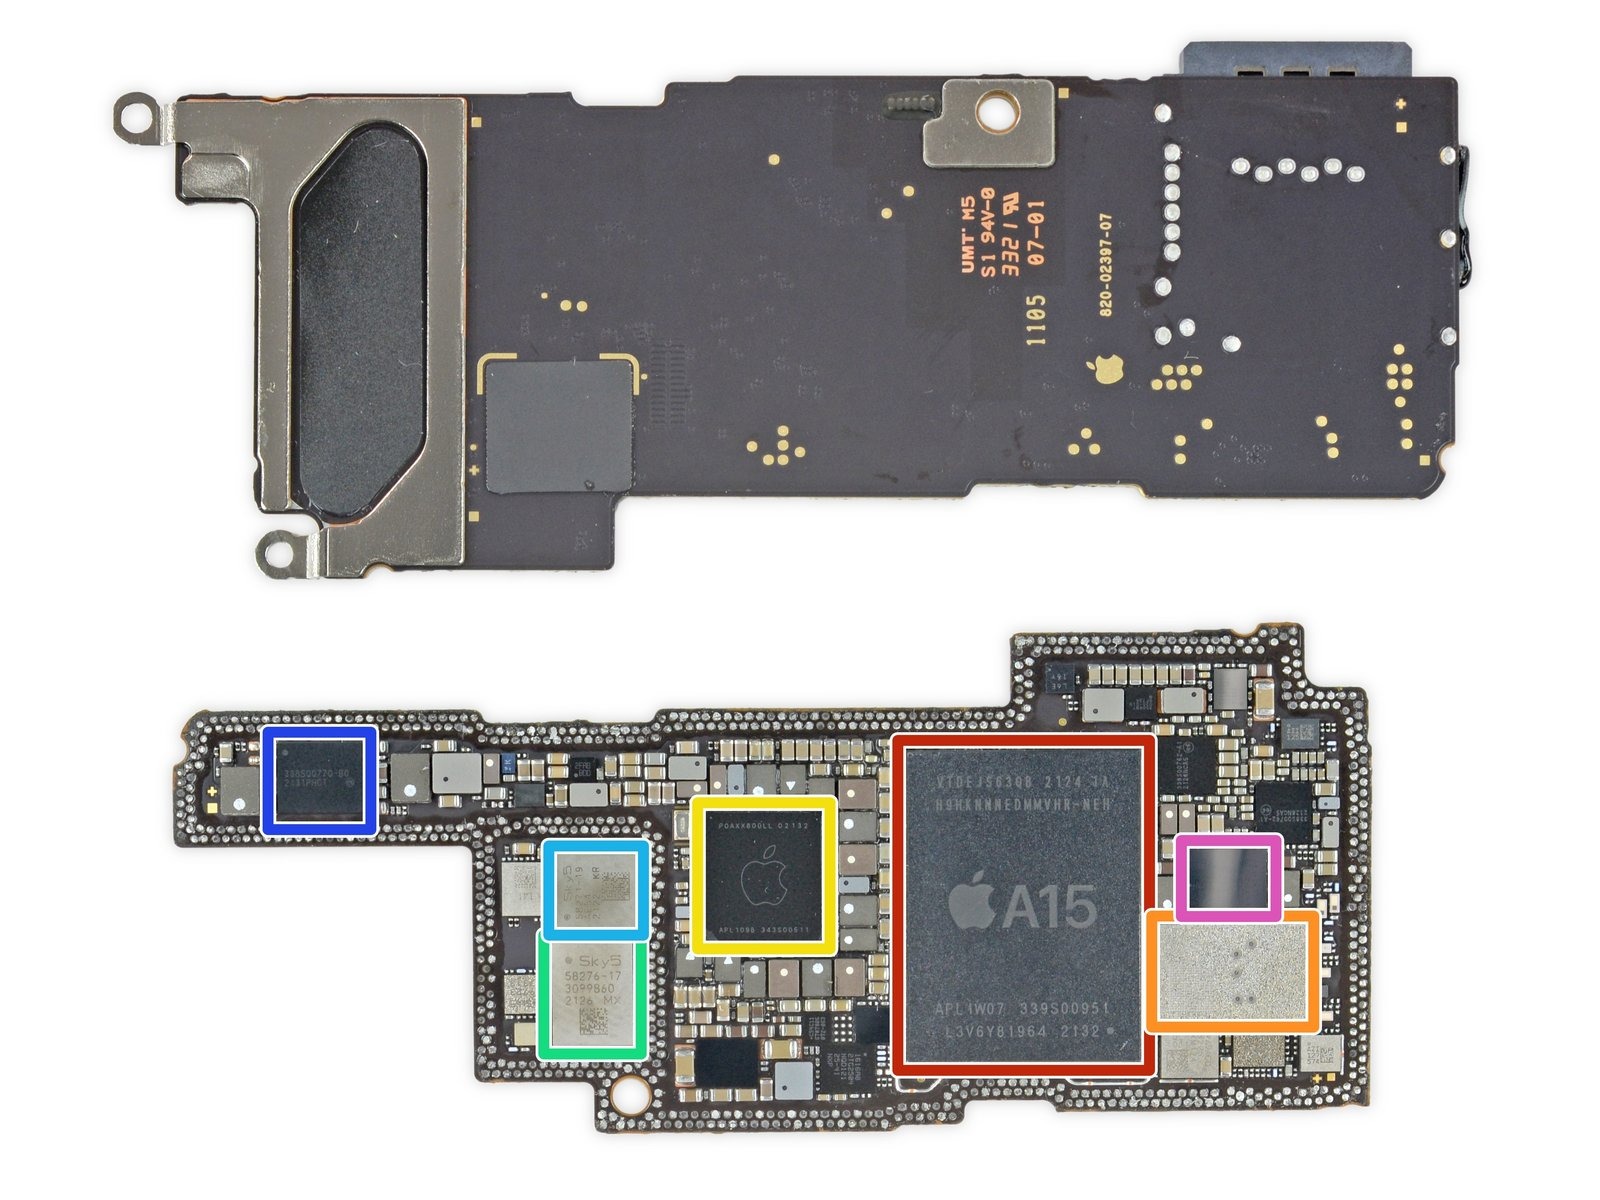 Placa base o logic board del iPhone 13 Pro con el A15